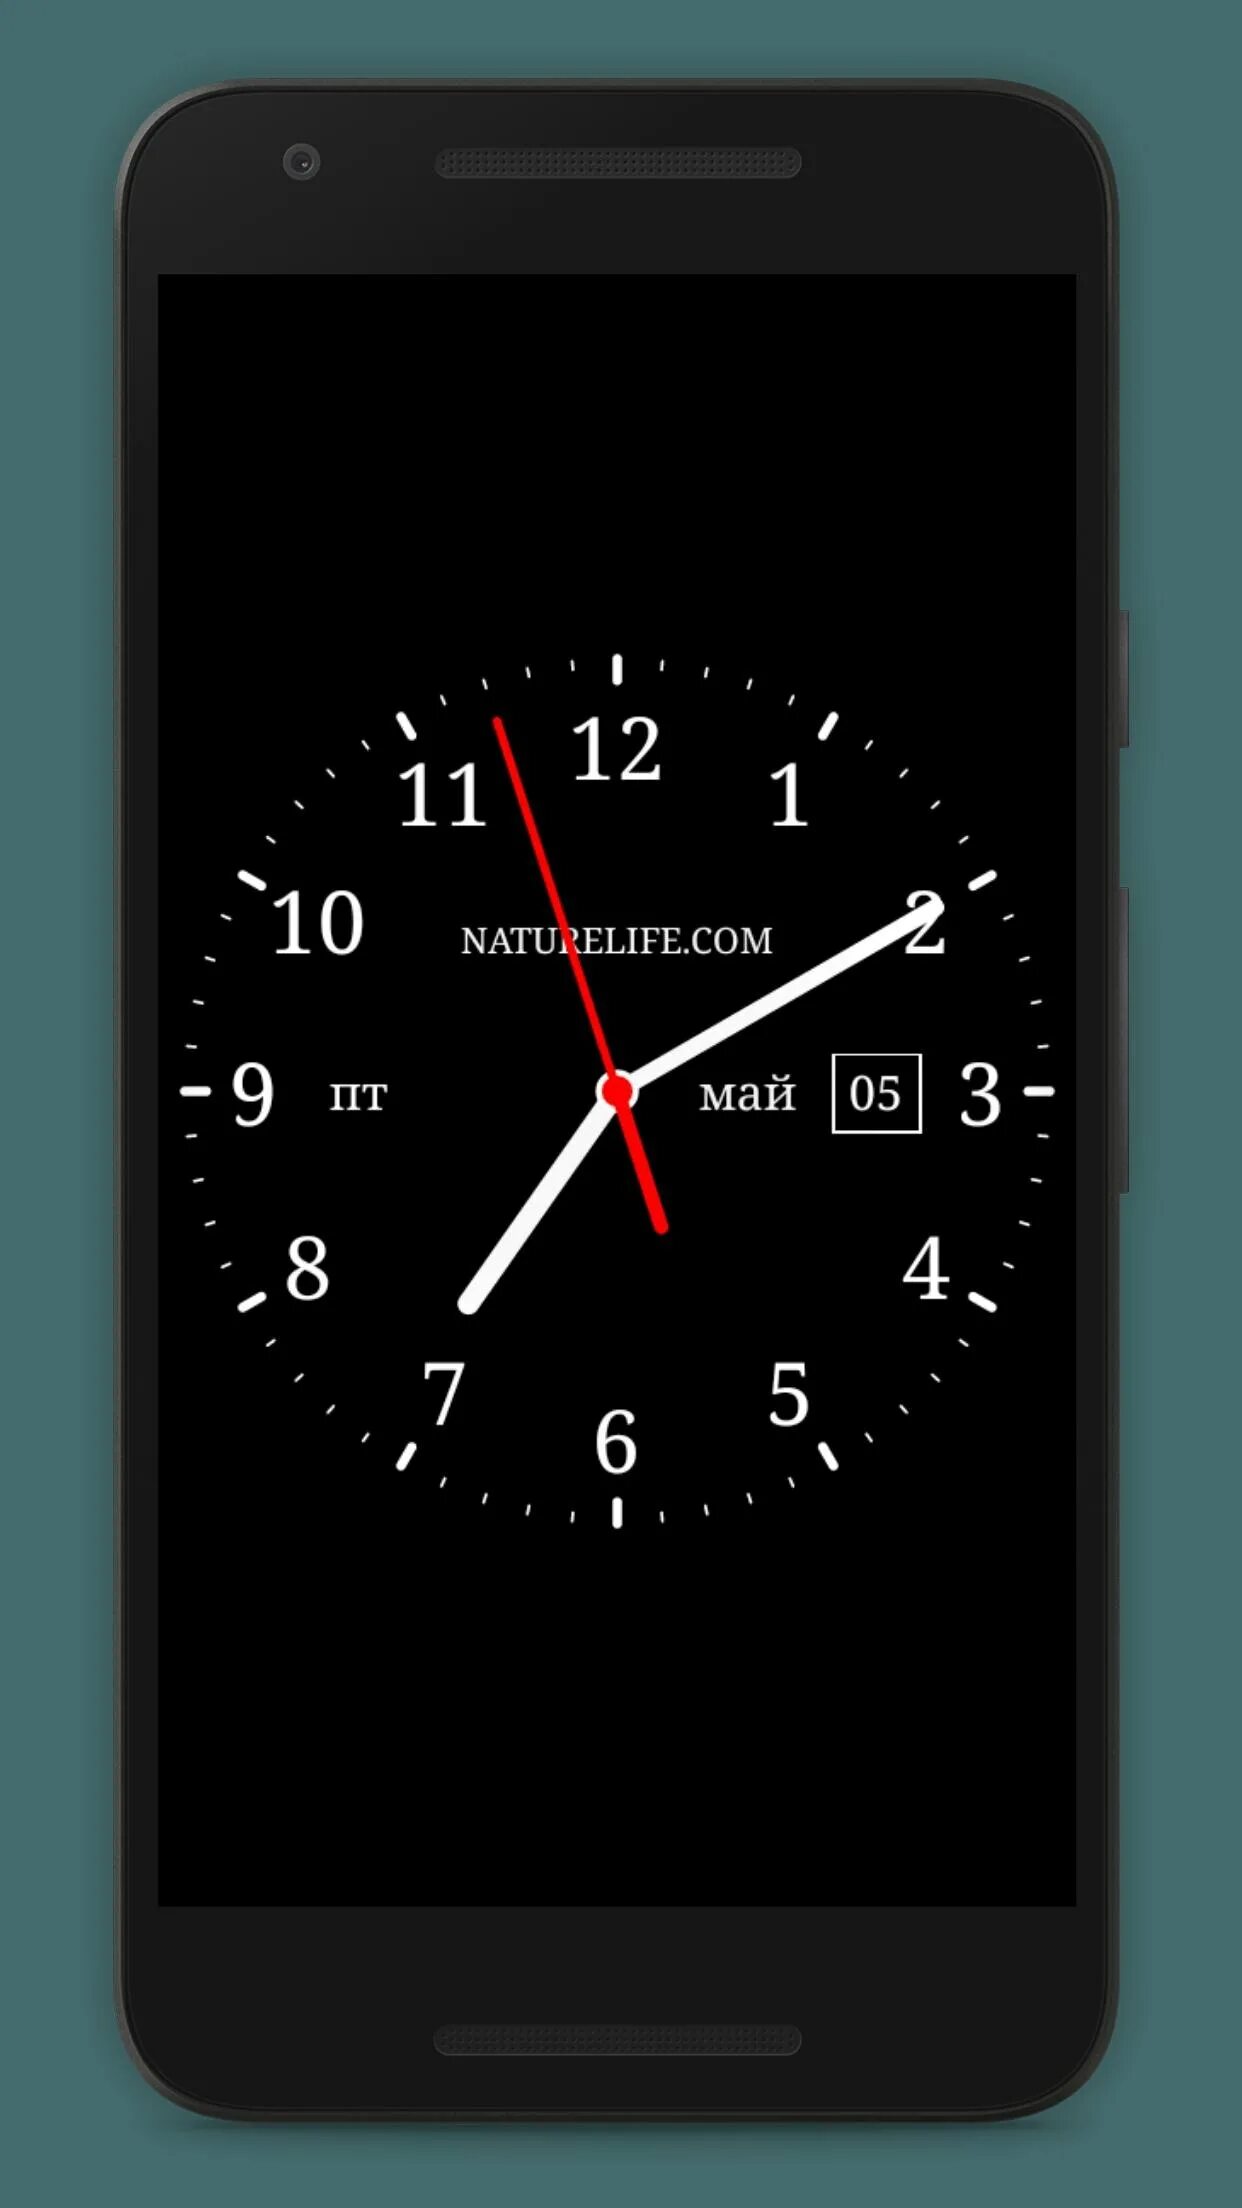 Аналоговые часы для андроид 4.2.2. Аналоговые часы для андроид Samsung a 260. Аналоговые часы для андроид. Часы на экран смартфона. Установить часы на дисплей